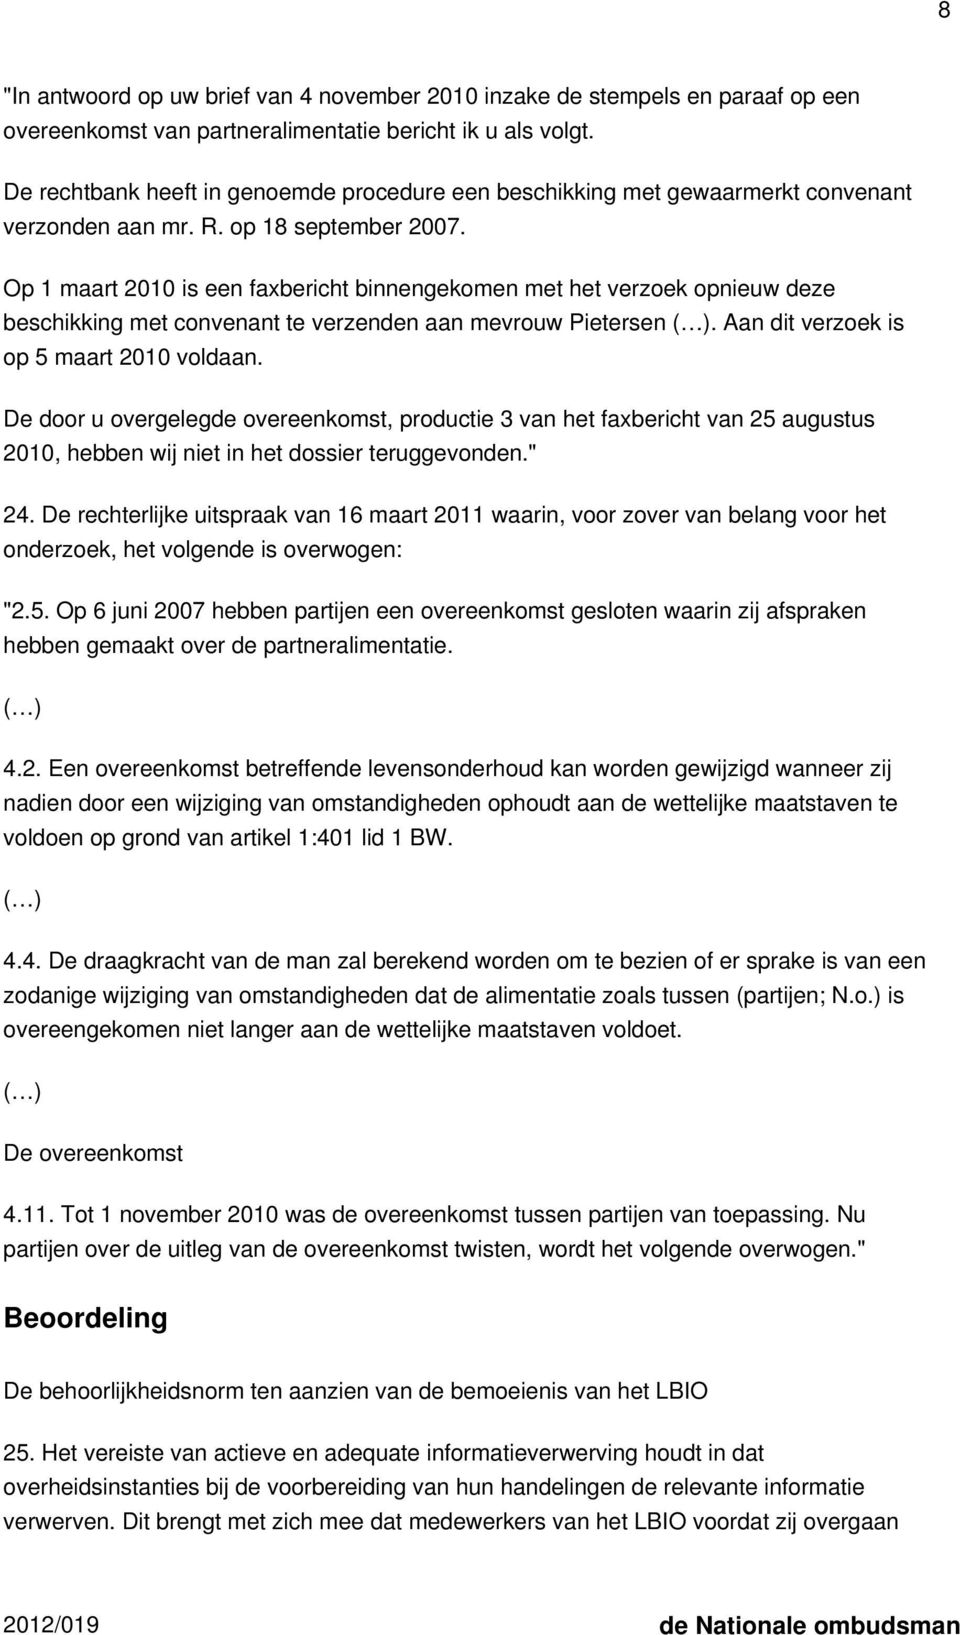 Op 1 maart 2010 is een faxbericht binnengekomen met het verzoek opnieuw deze beschikking met convenant te verzenden aan mevrouw Pietersen ( ). Aan dit verzoek is op 5 maart 2010 voldaan.